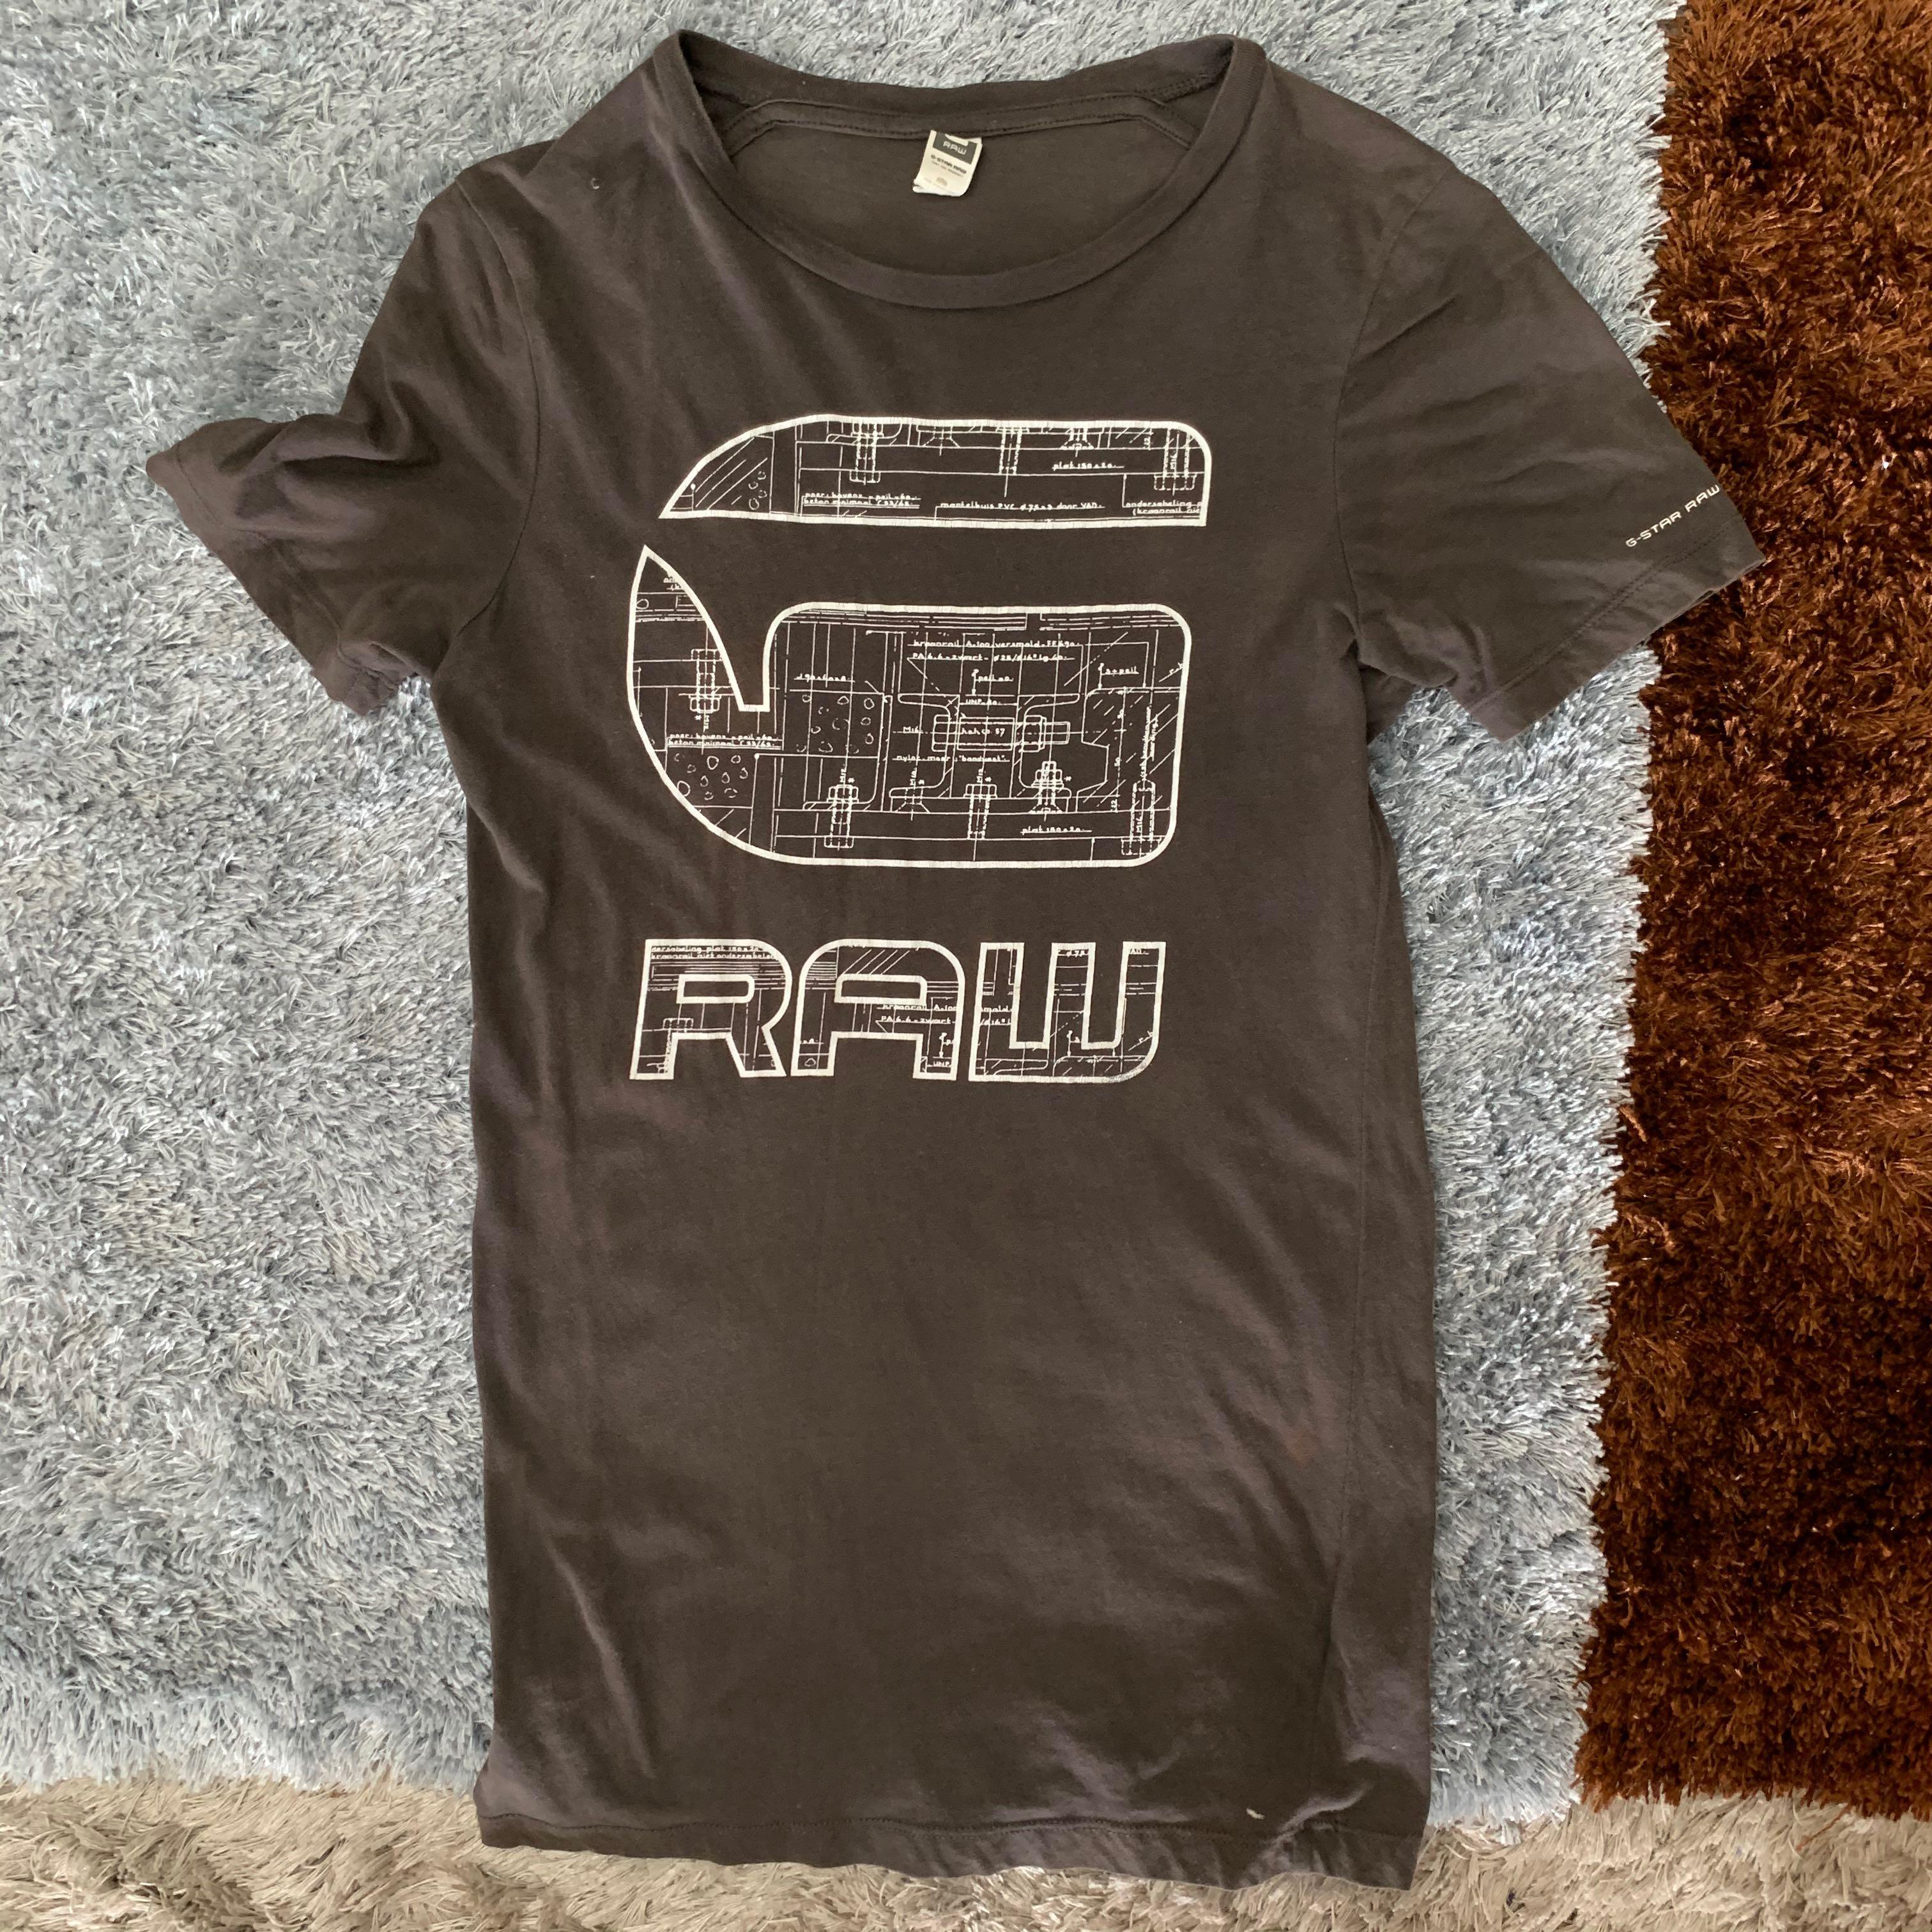 raw brand t shirt